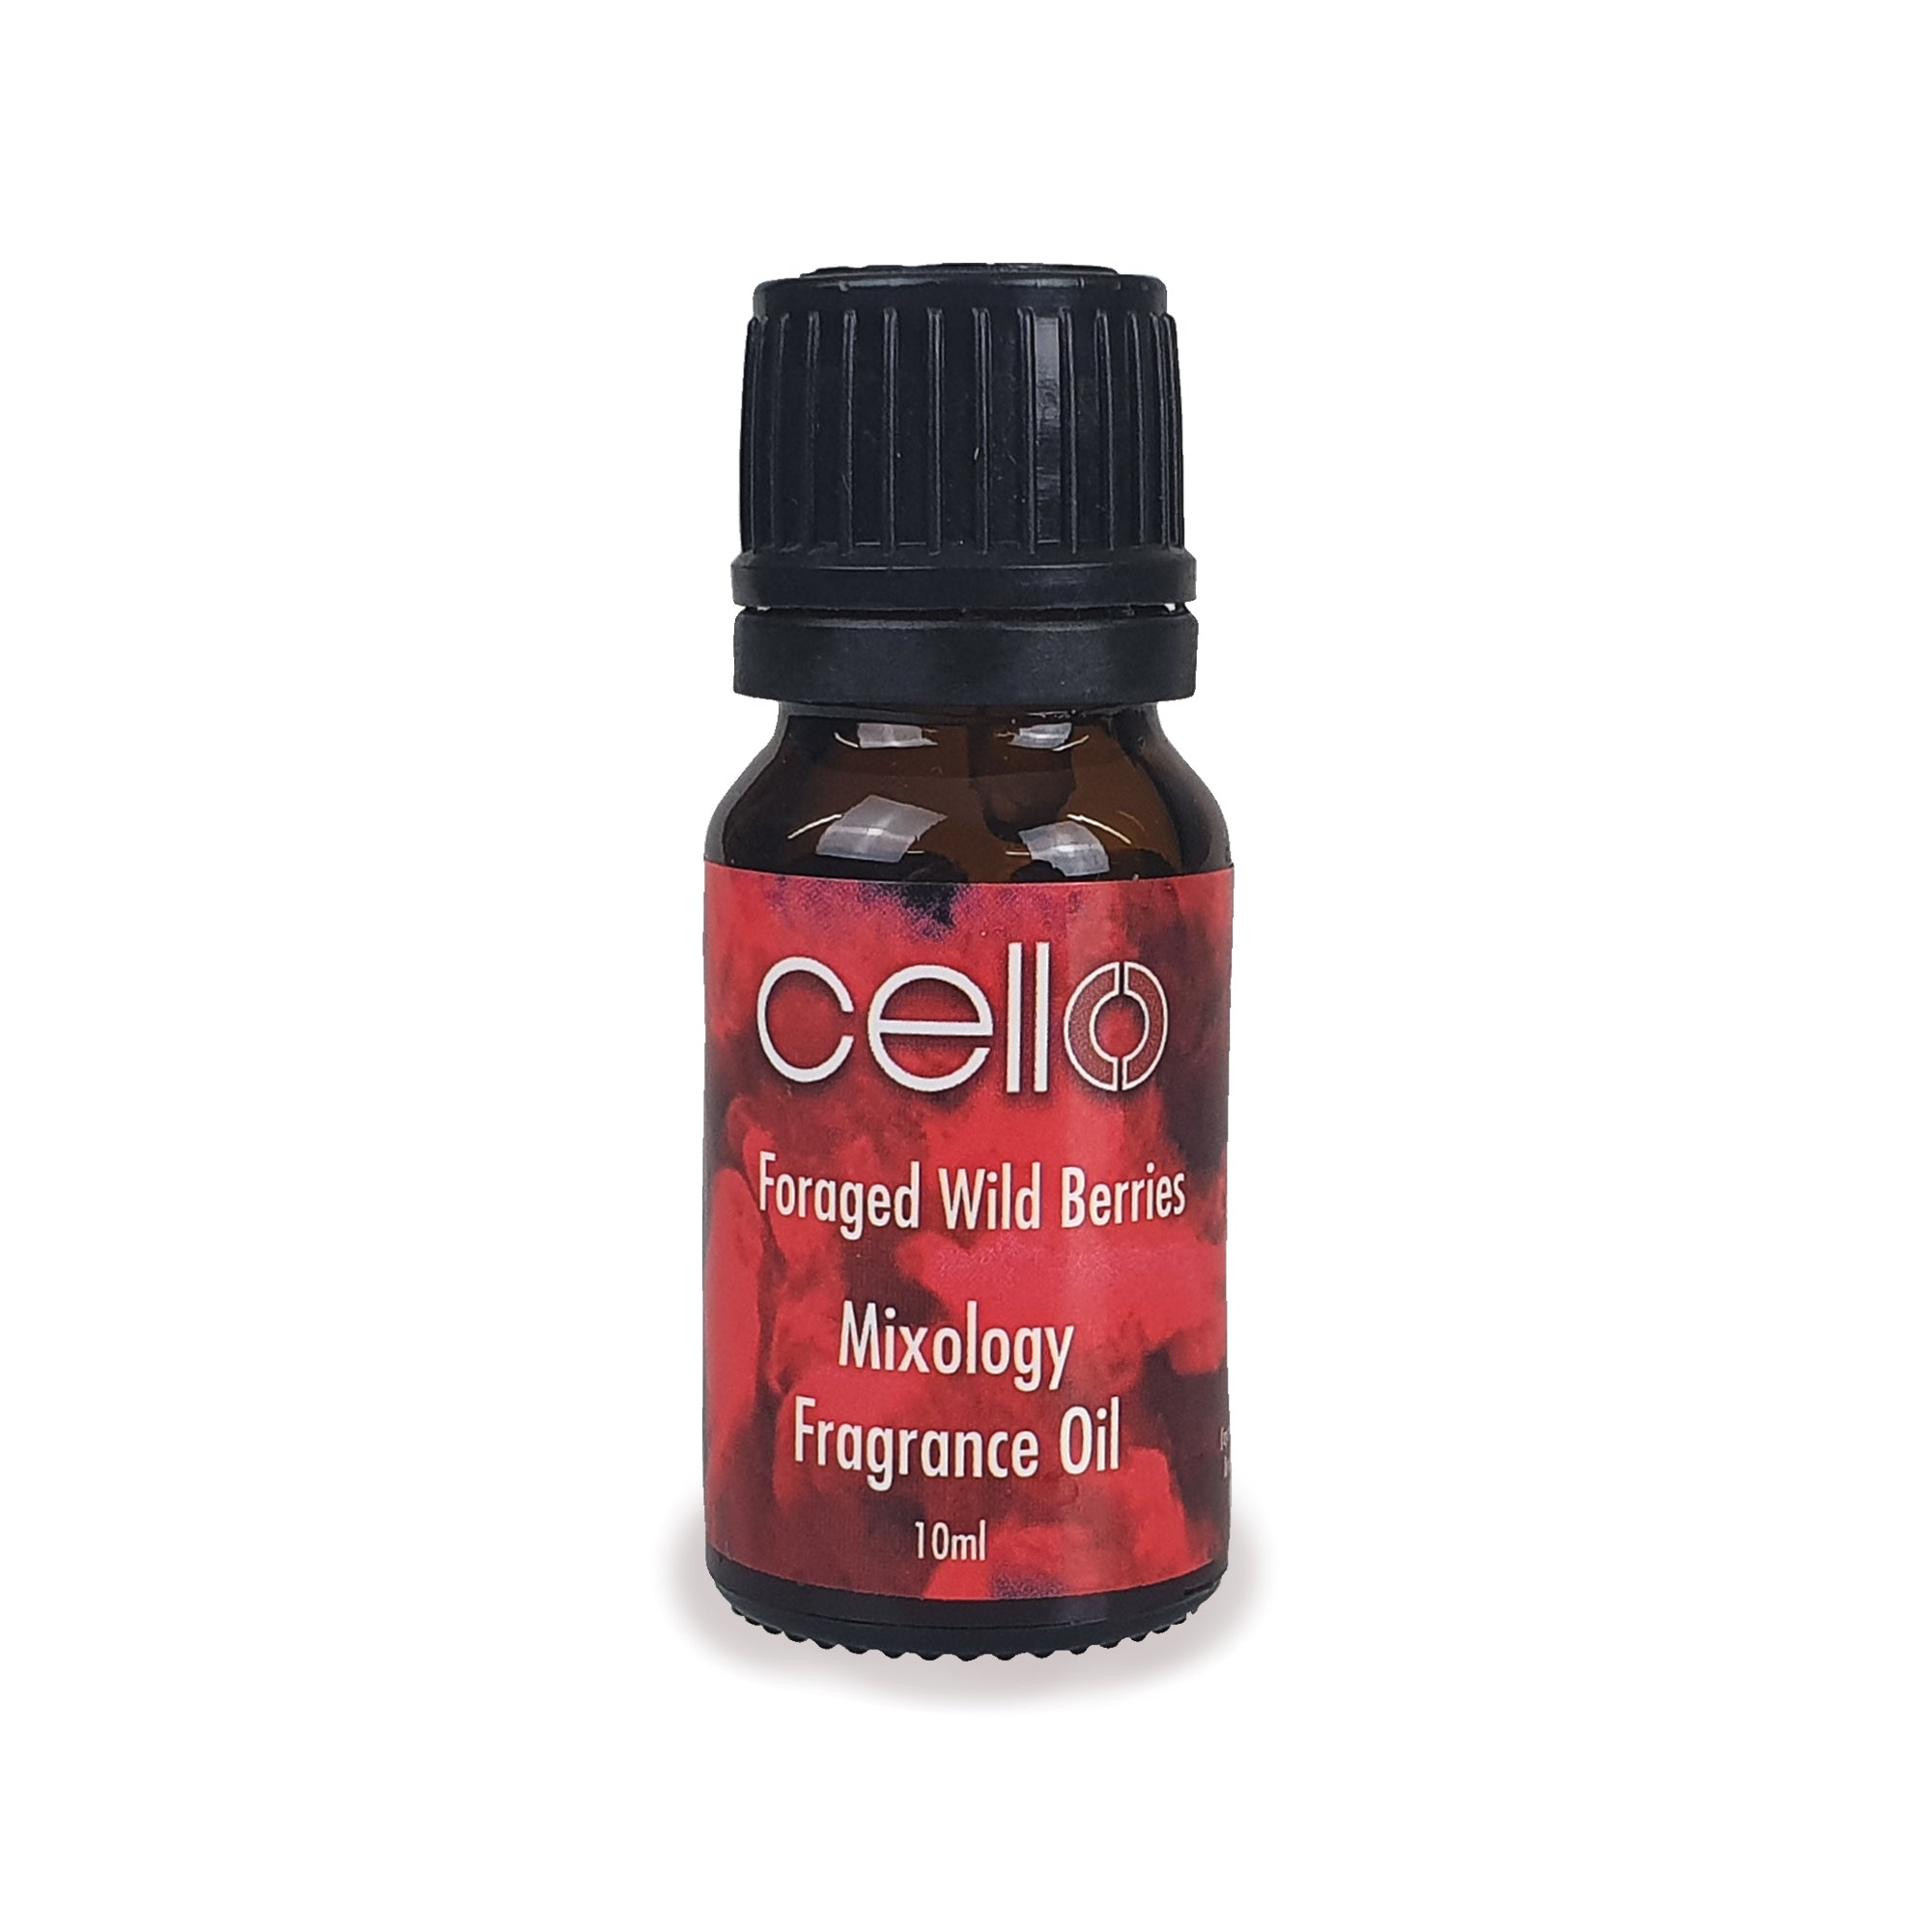 Cello - Mixology Fragrance Oils - Foraged Wild Berries